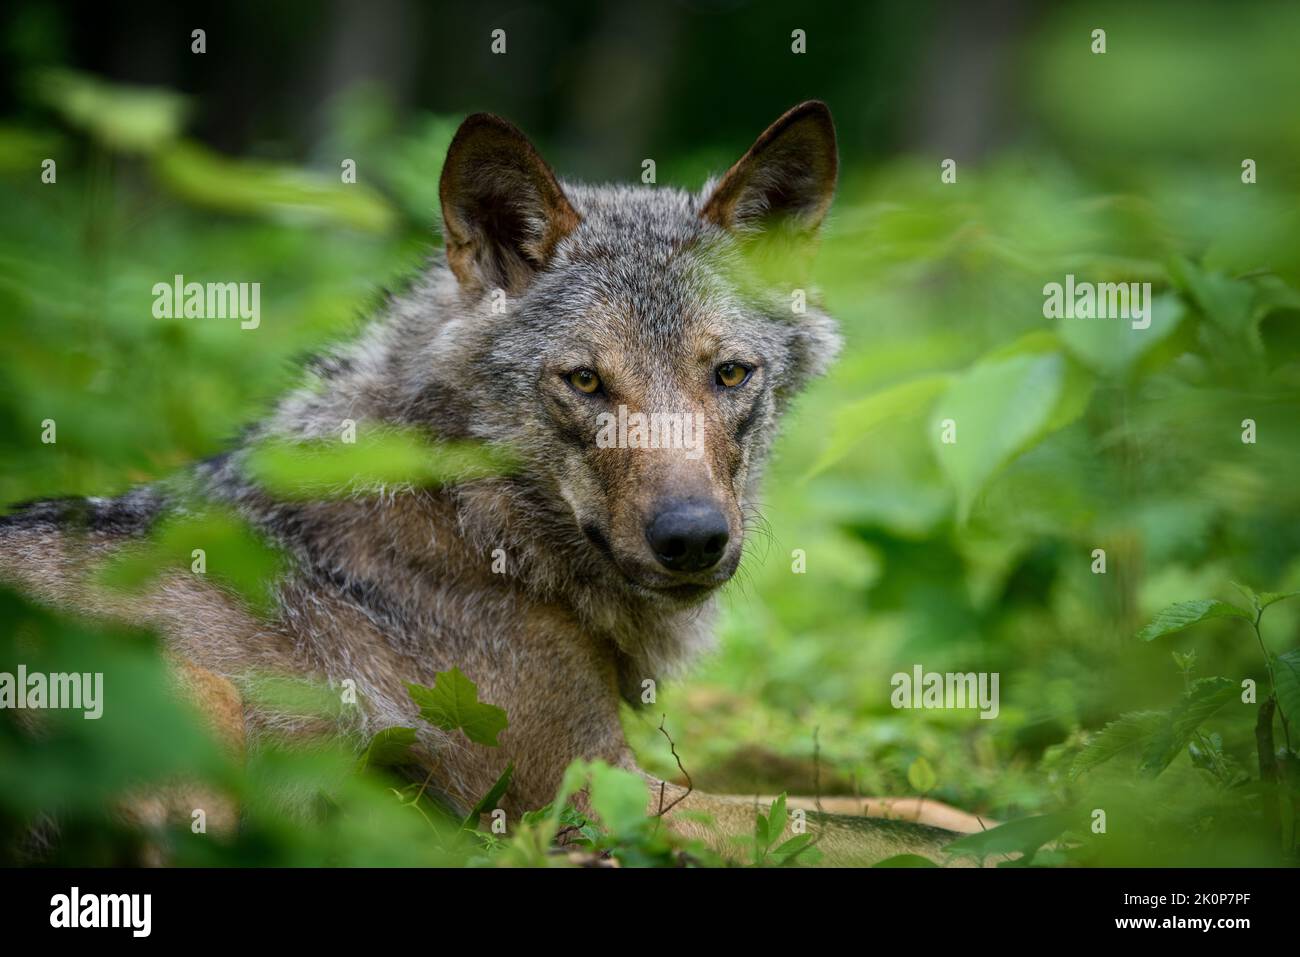 Ritratto di lupo nella foresta. Fauna selvatica scena dalla natura. Animale selvatico nell'habitat naturale Foto Stock